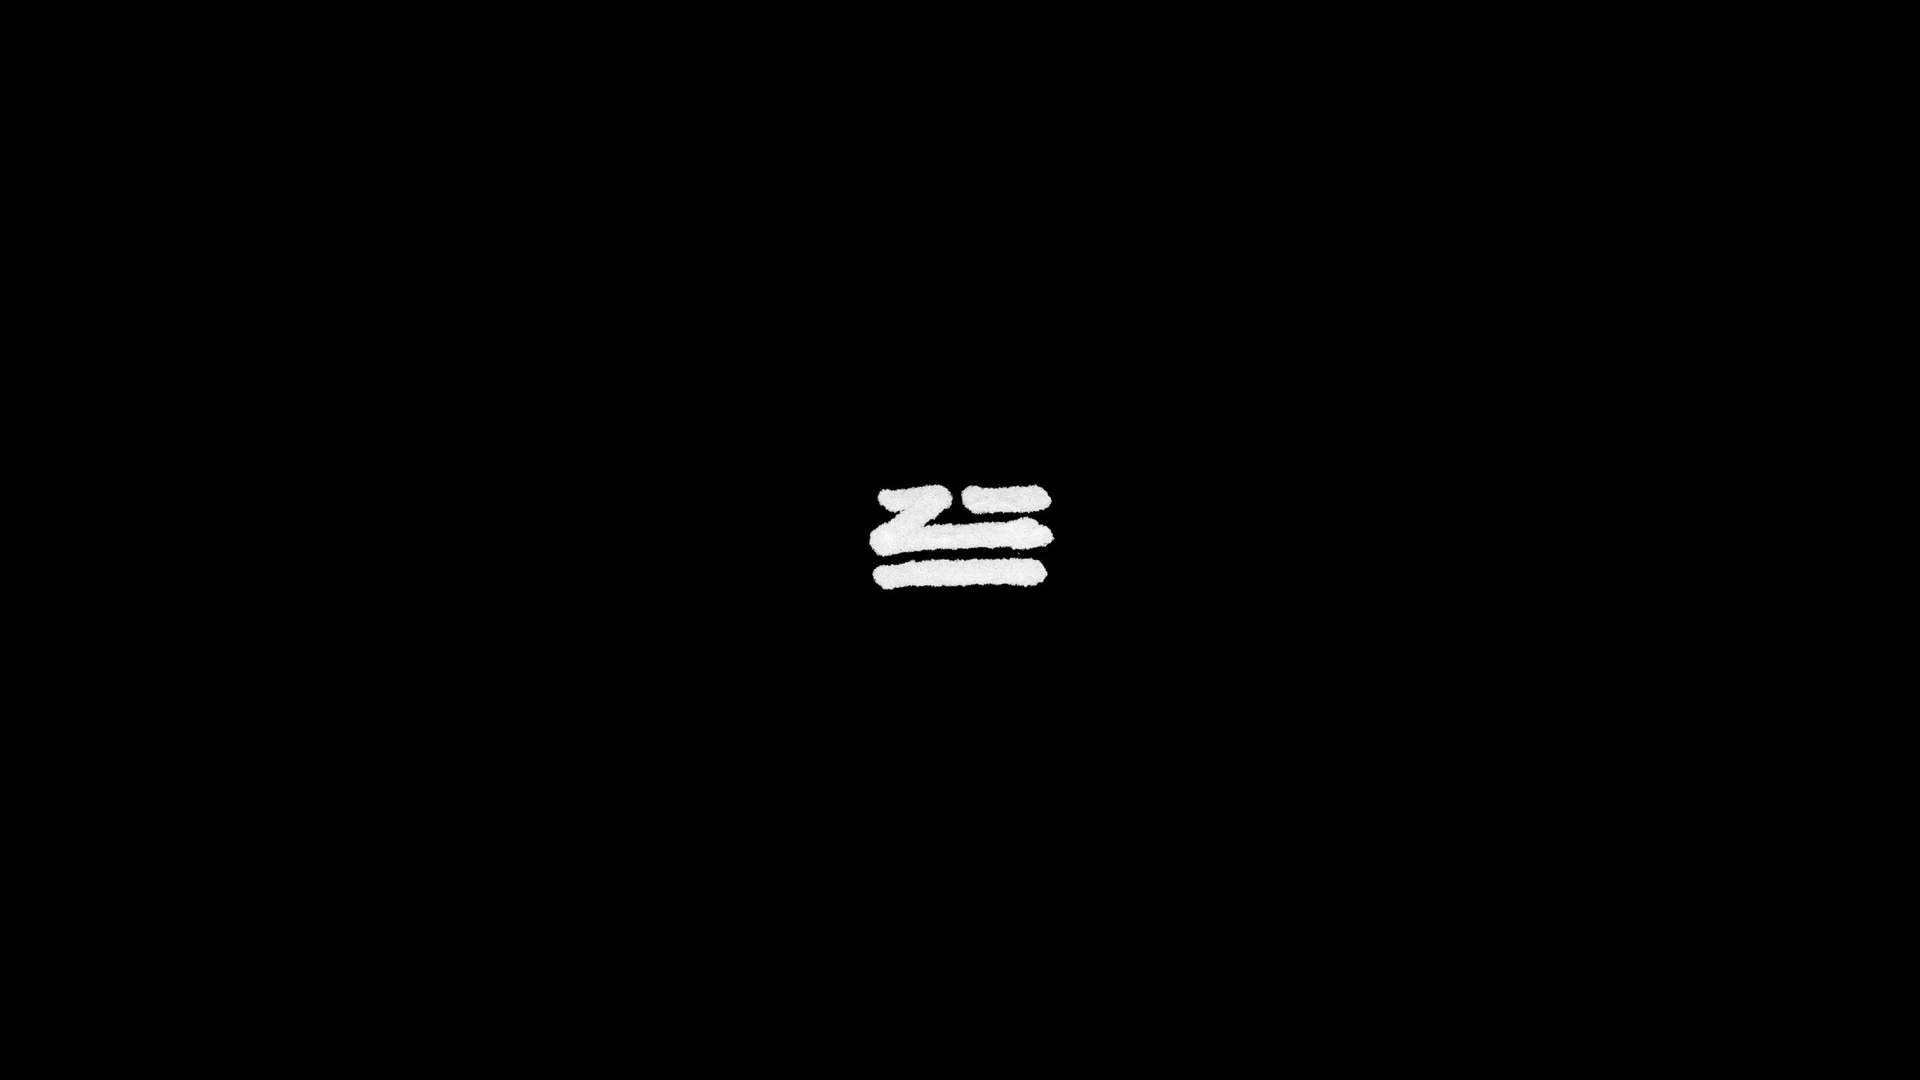 ZHU Logo Wallpaper 70320 1920x1080px